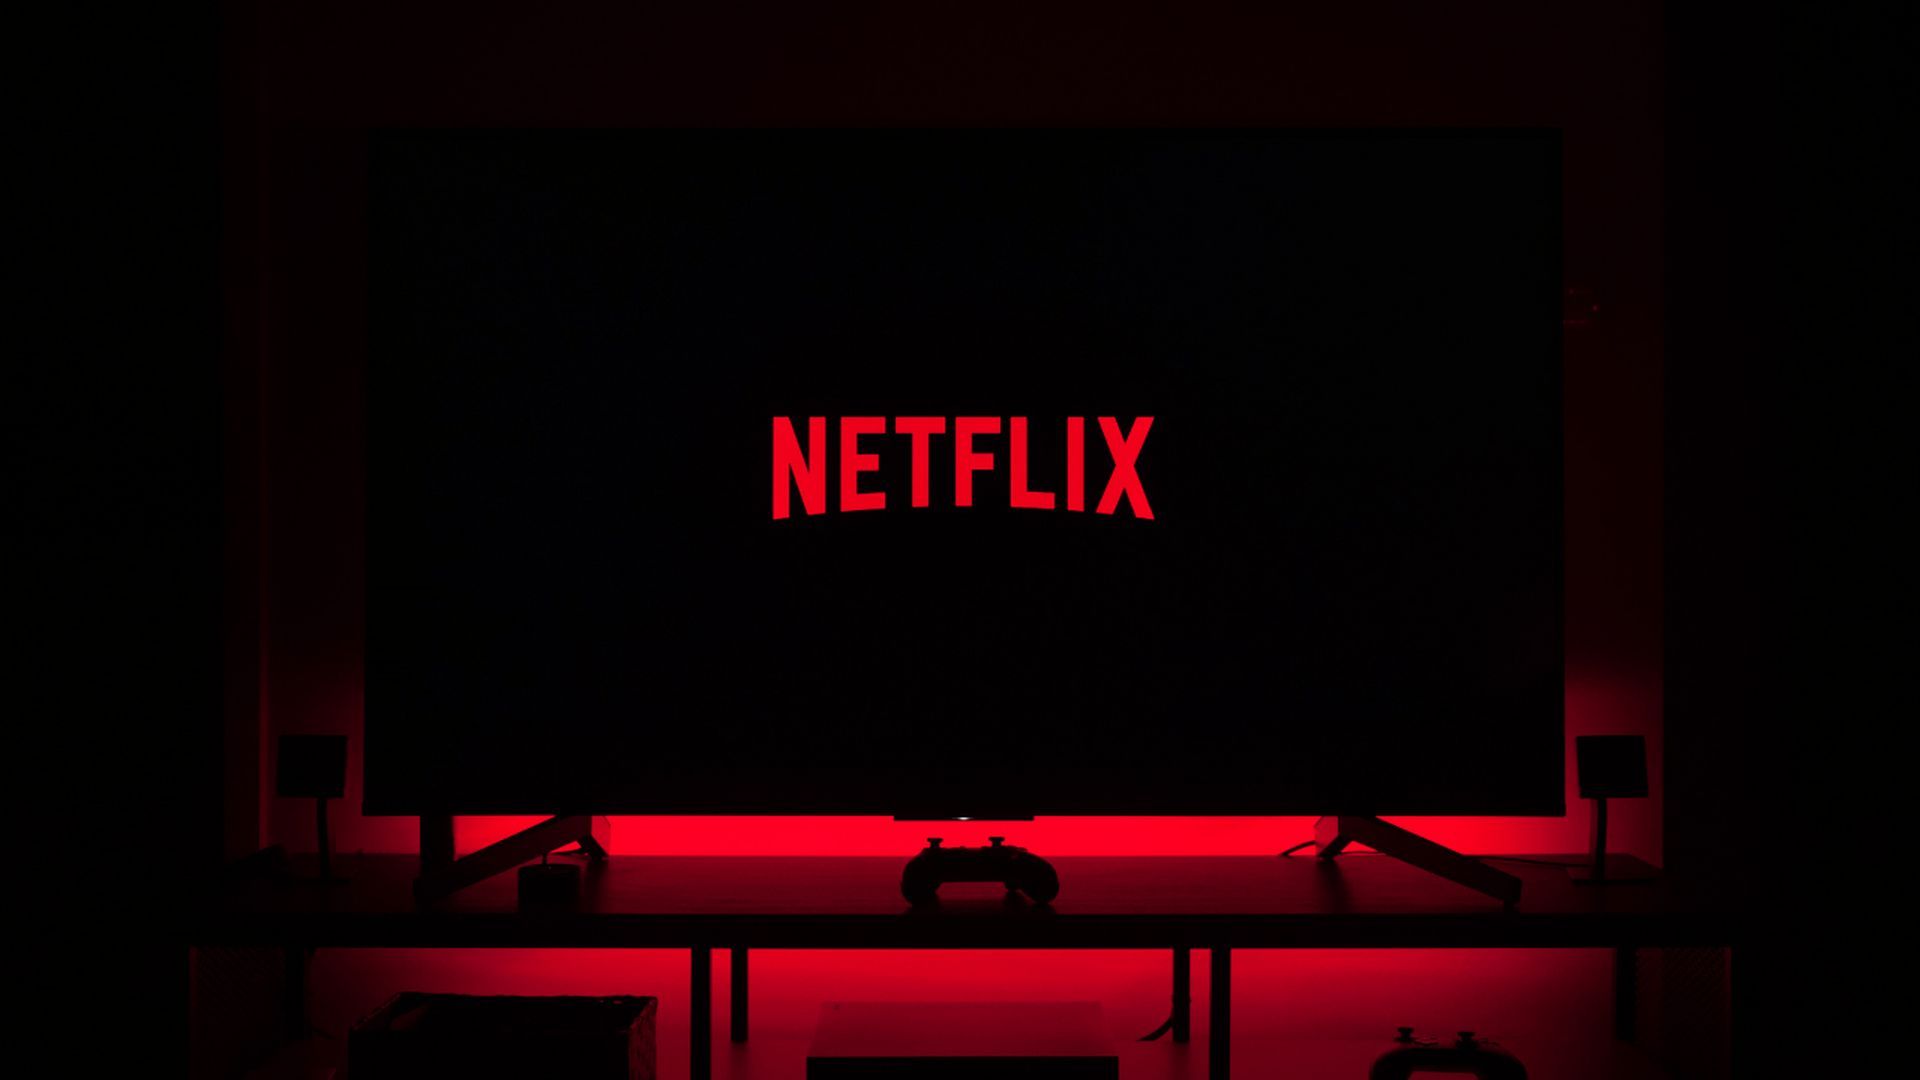 Рид Хастингс, генеральный директор Netflix, покидает свой пост